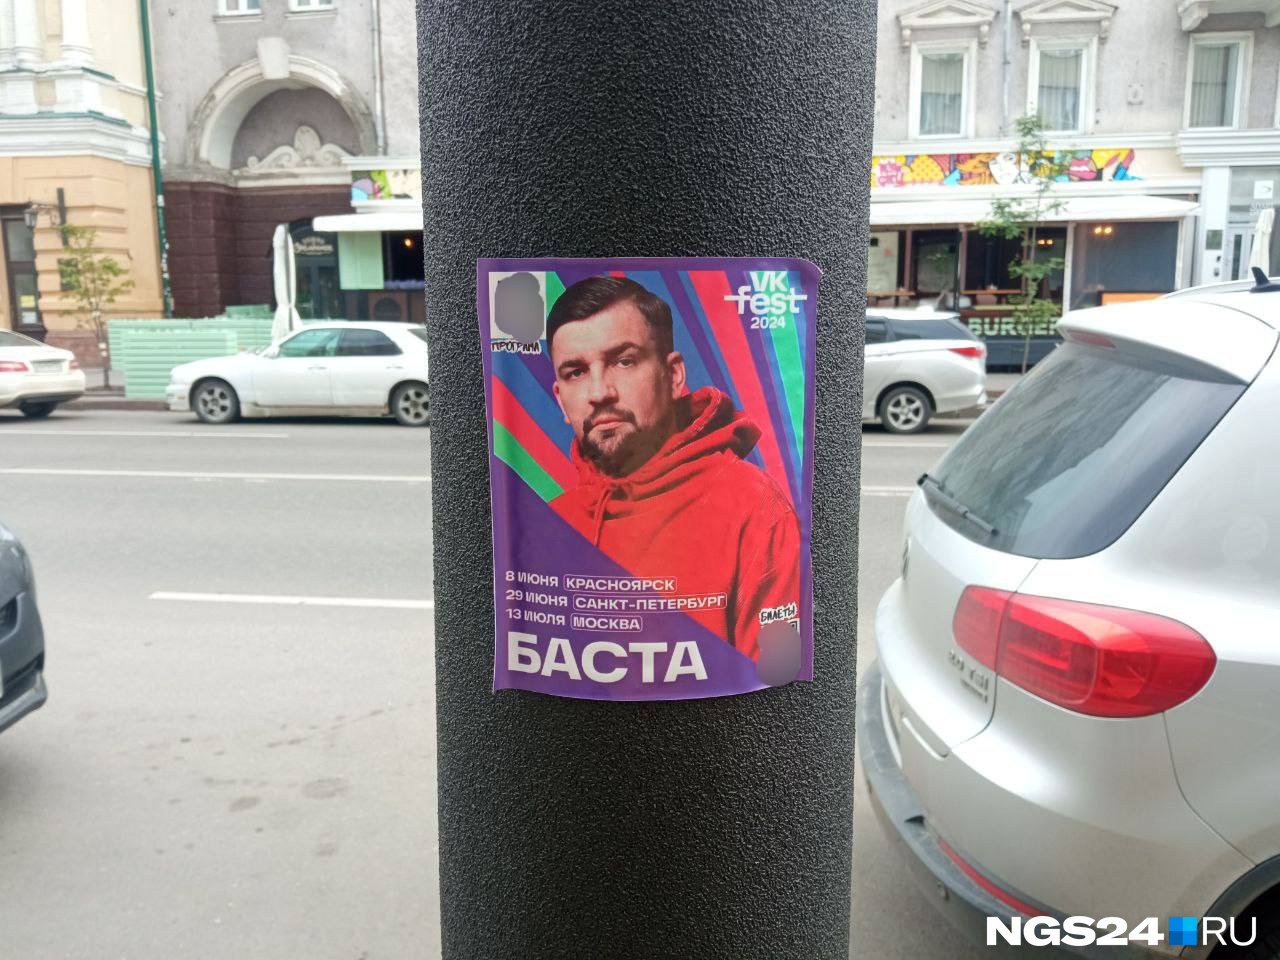 «Пытаются продвигать за наш счет свои услуги»: в Красноярске появилась фейковая реклама VK Fest с Бастой